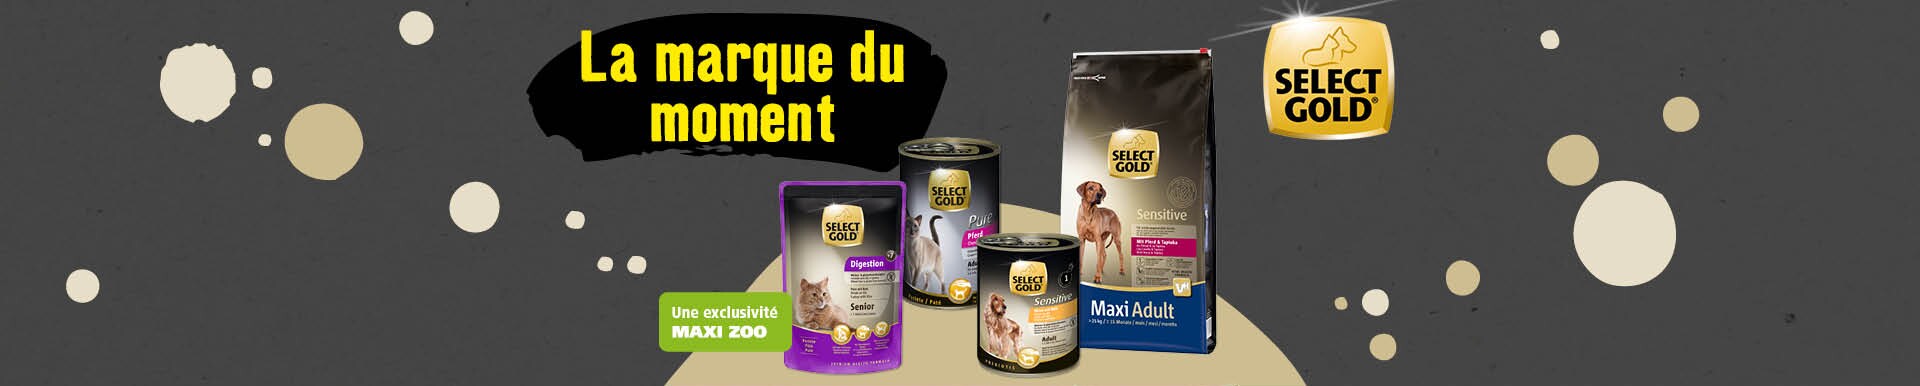 Animalerie En Ligne Produits Pour Animaux Maxi Zoo